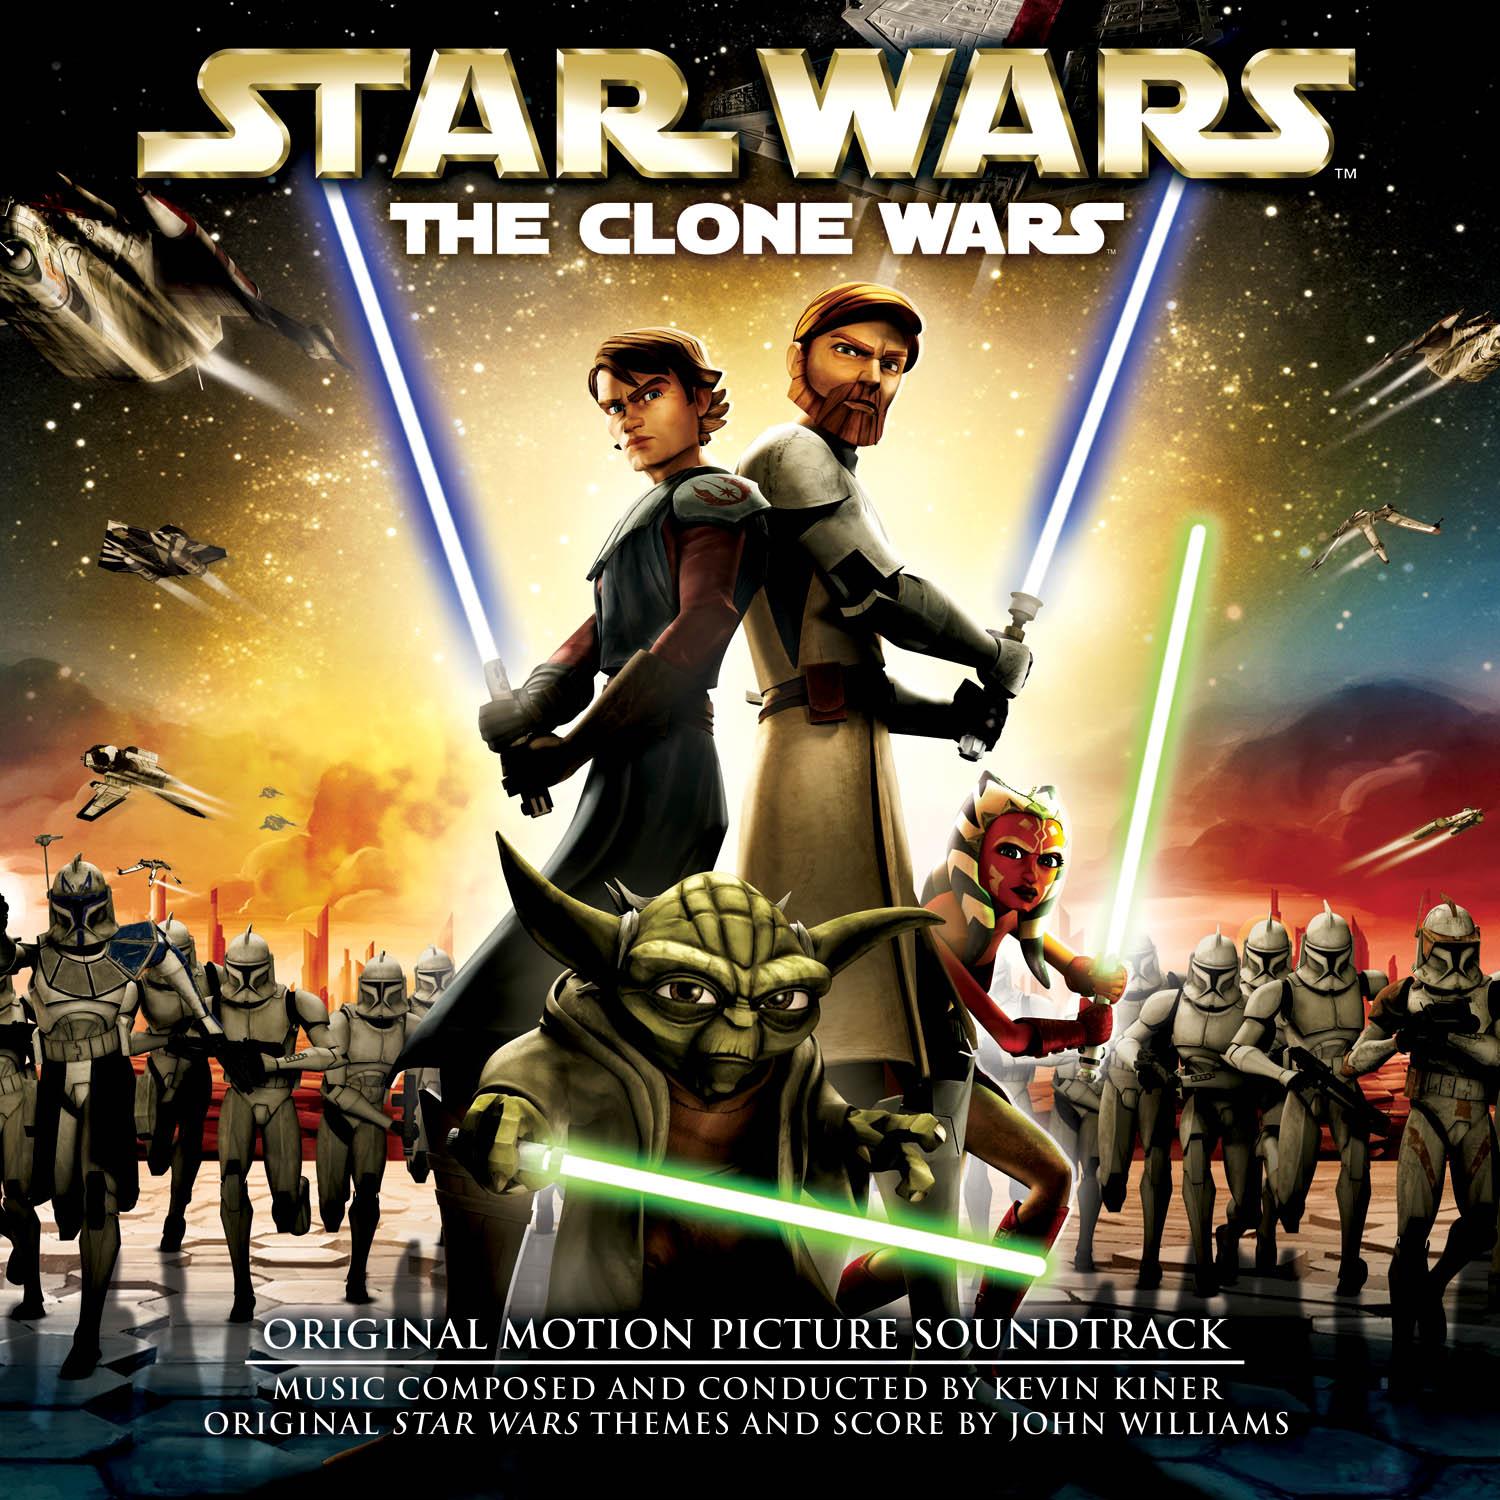 Star Wars: The Clone Wars wallpaper, Movie, HQ Star Wars